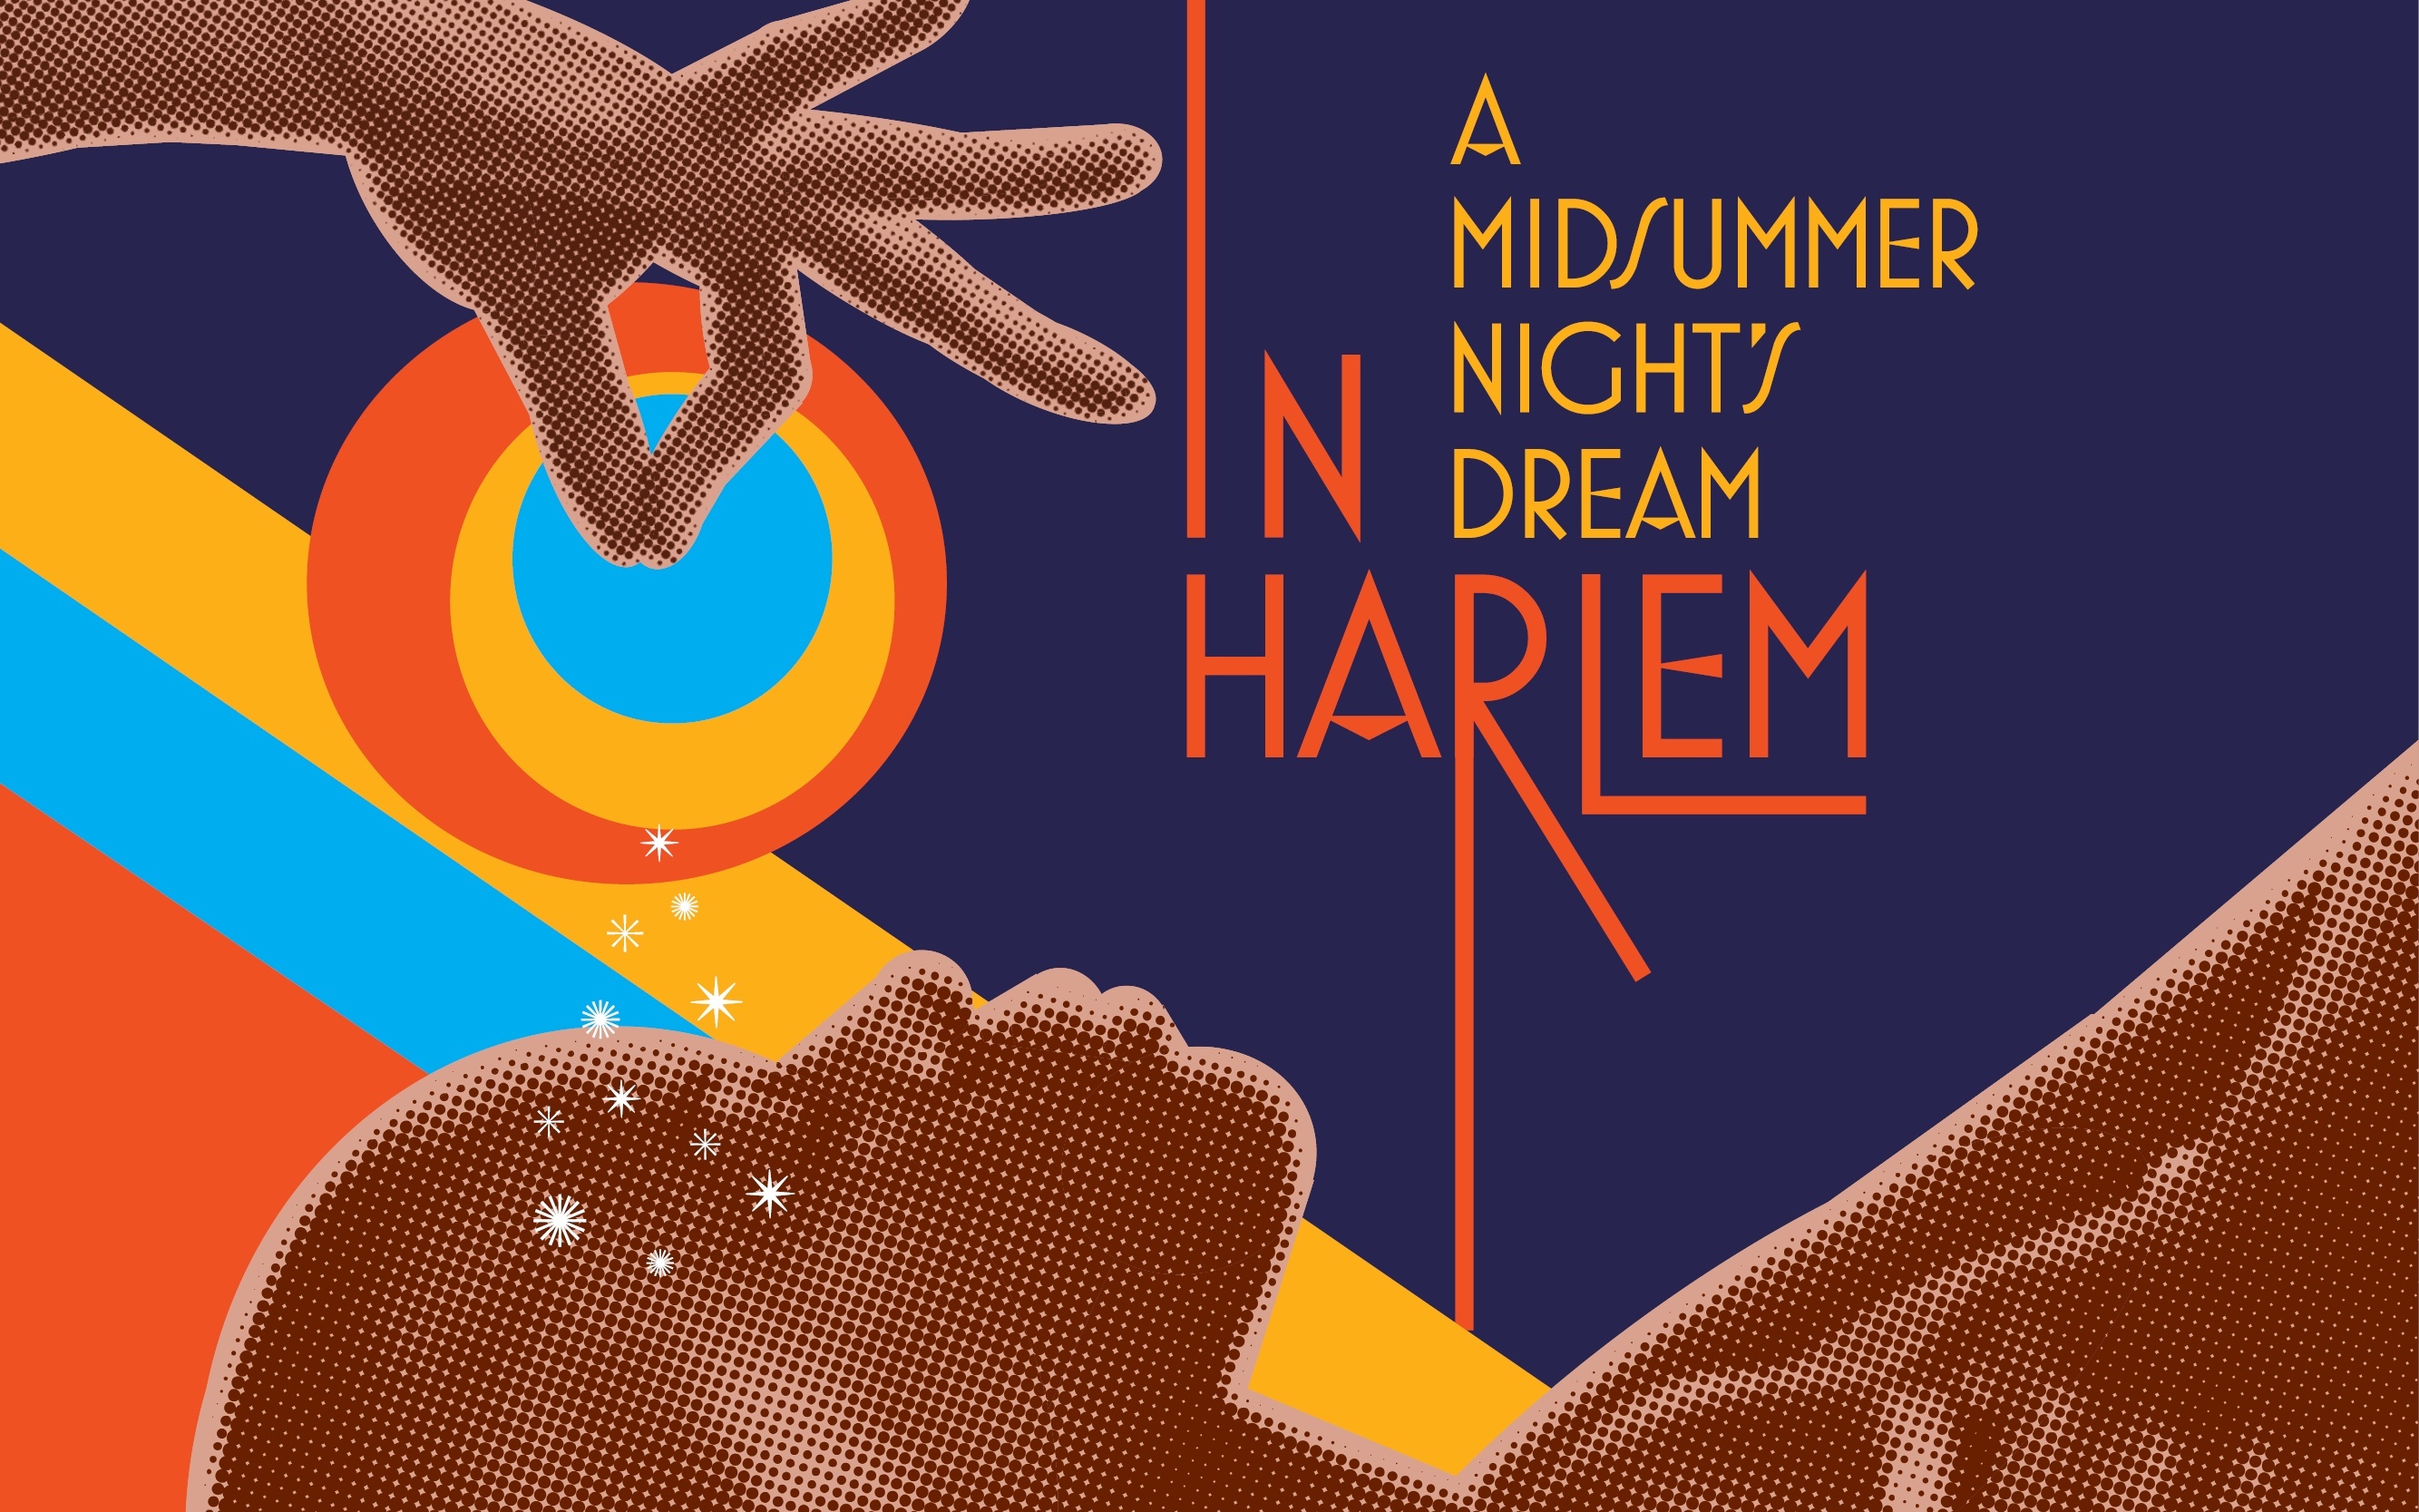 A Midsummer Night’s Dream in Harlem